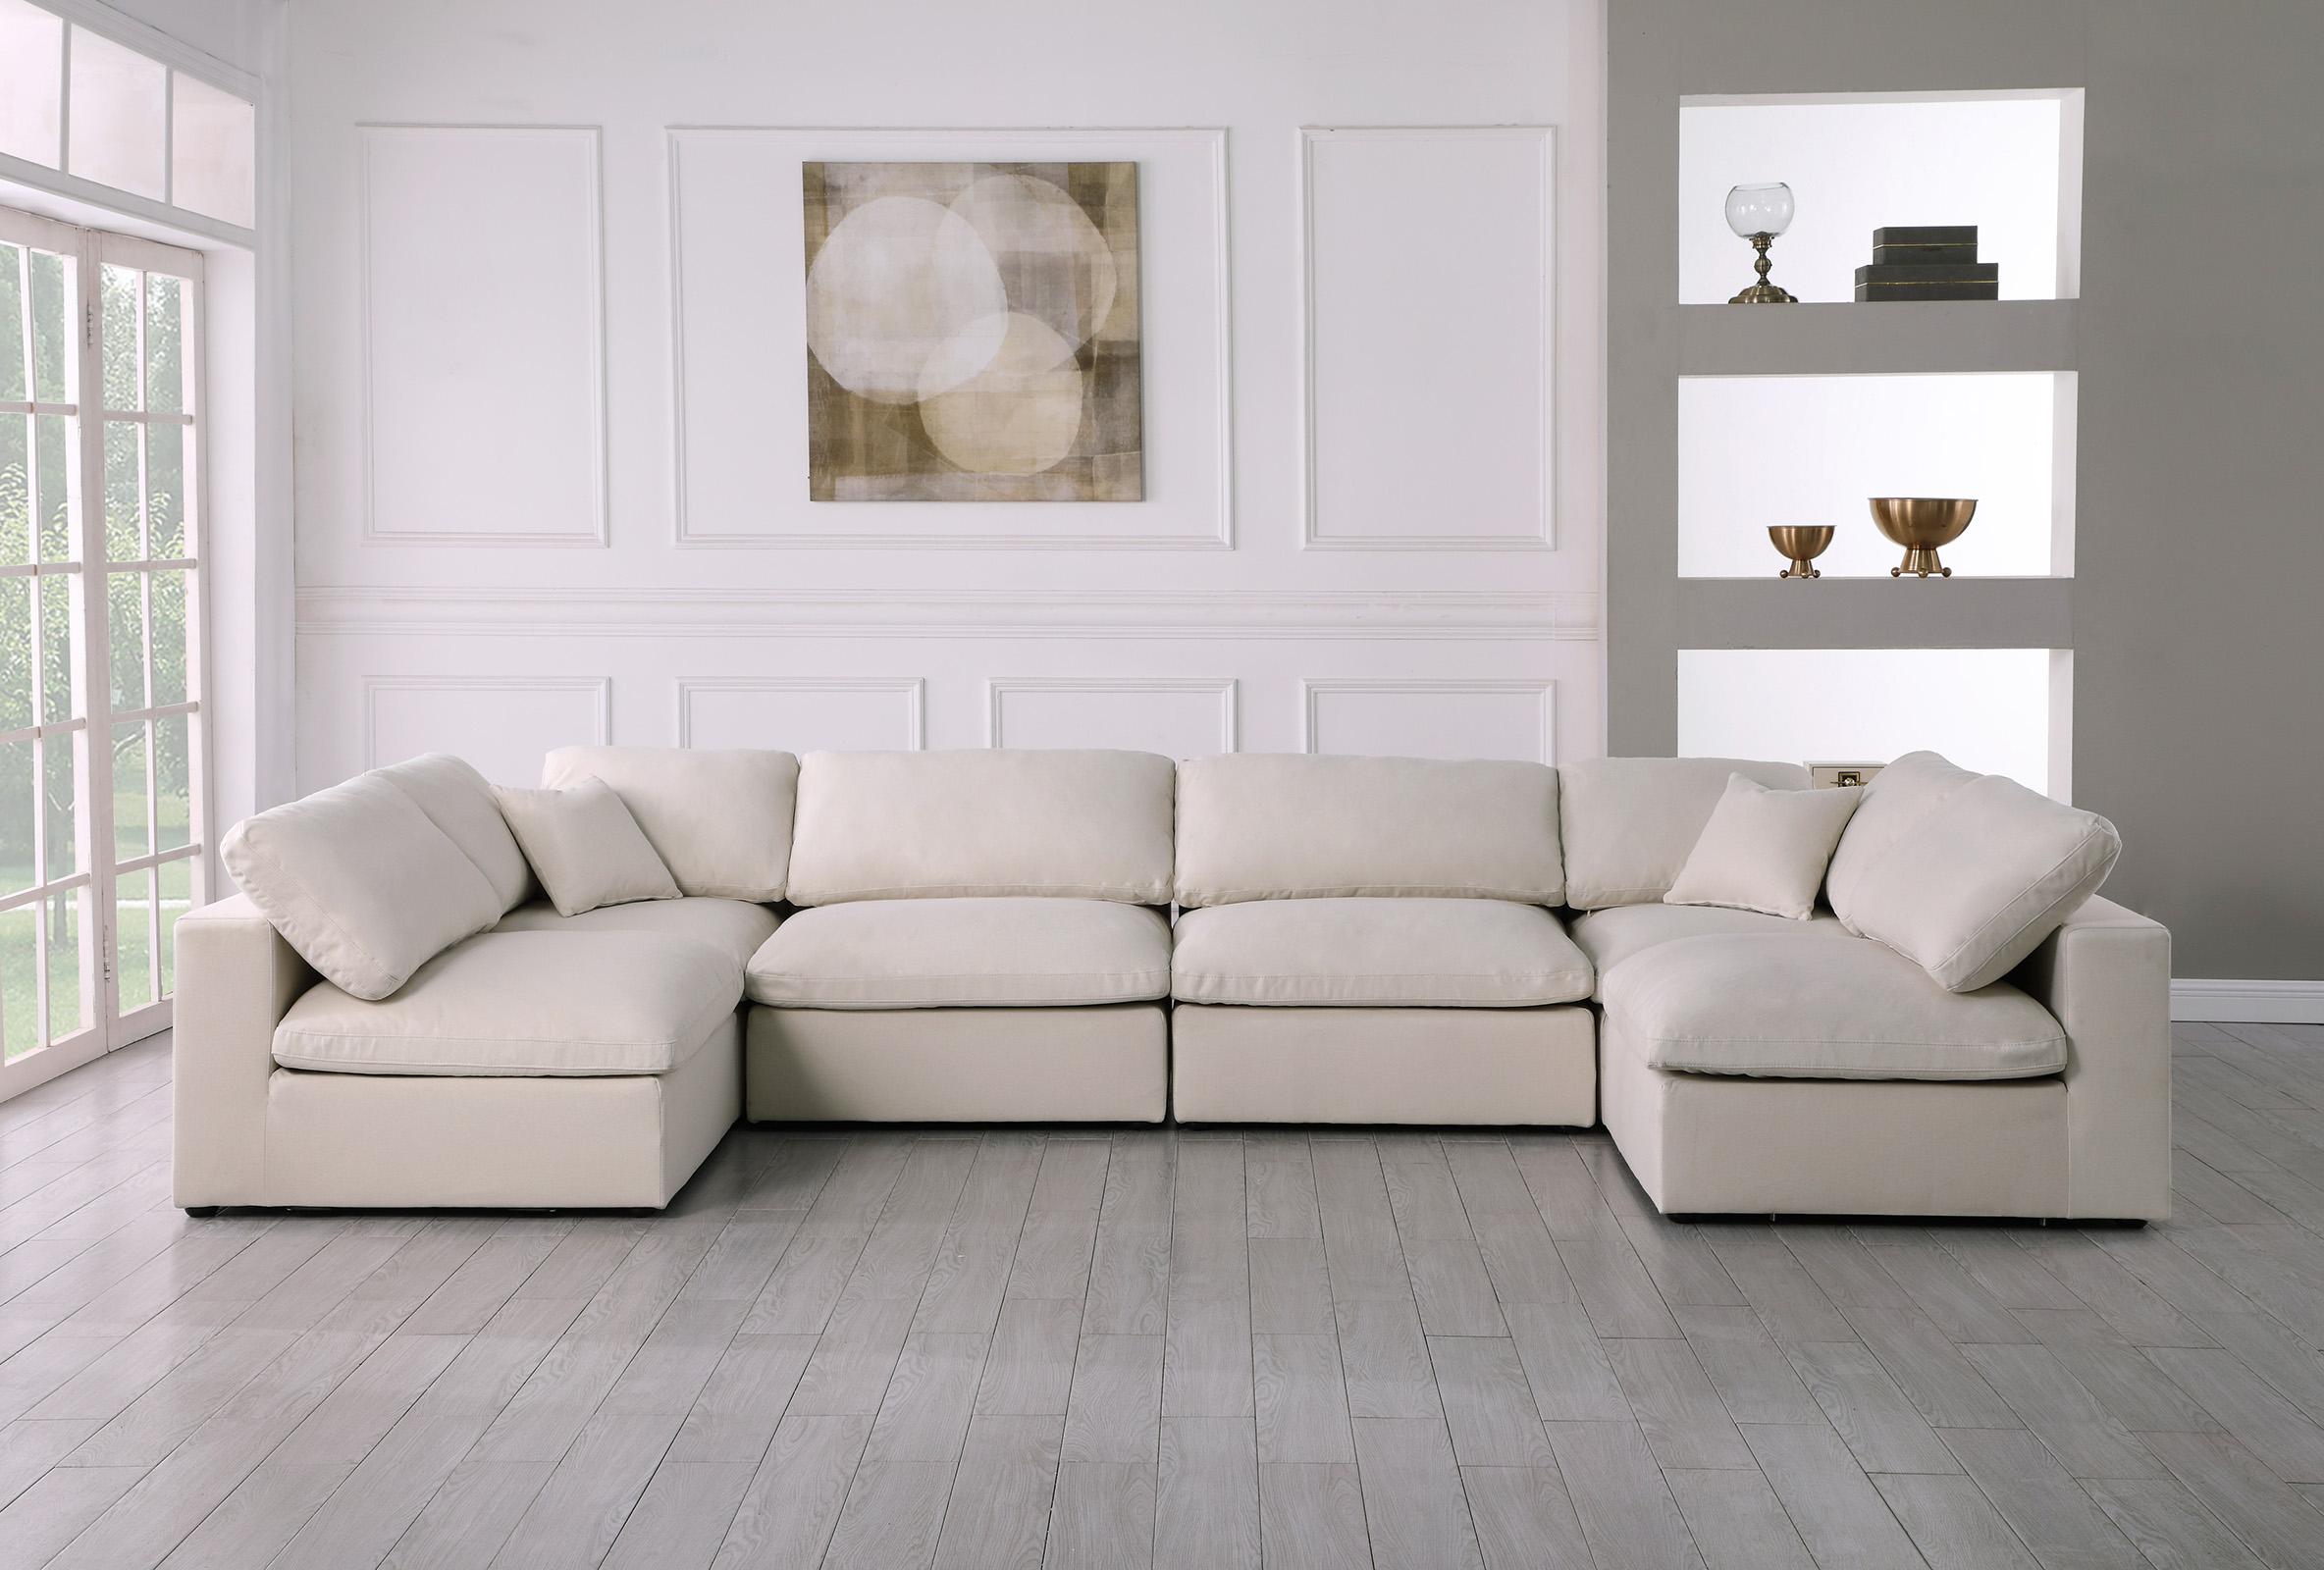 

    
Meridian Furniture 602Cream-Sec6D Modular Sectional Sofa Cream 602Cream-Sec6D
